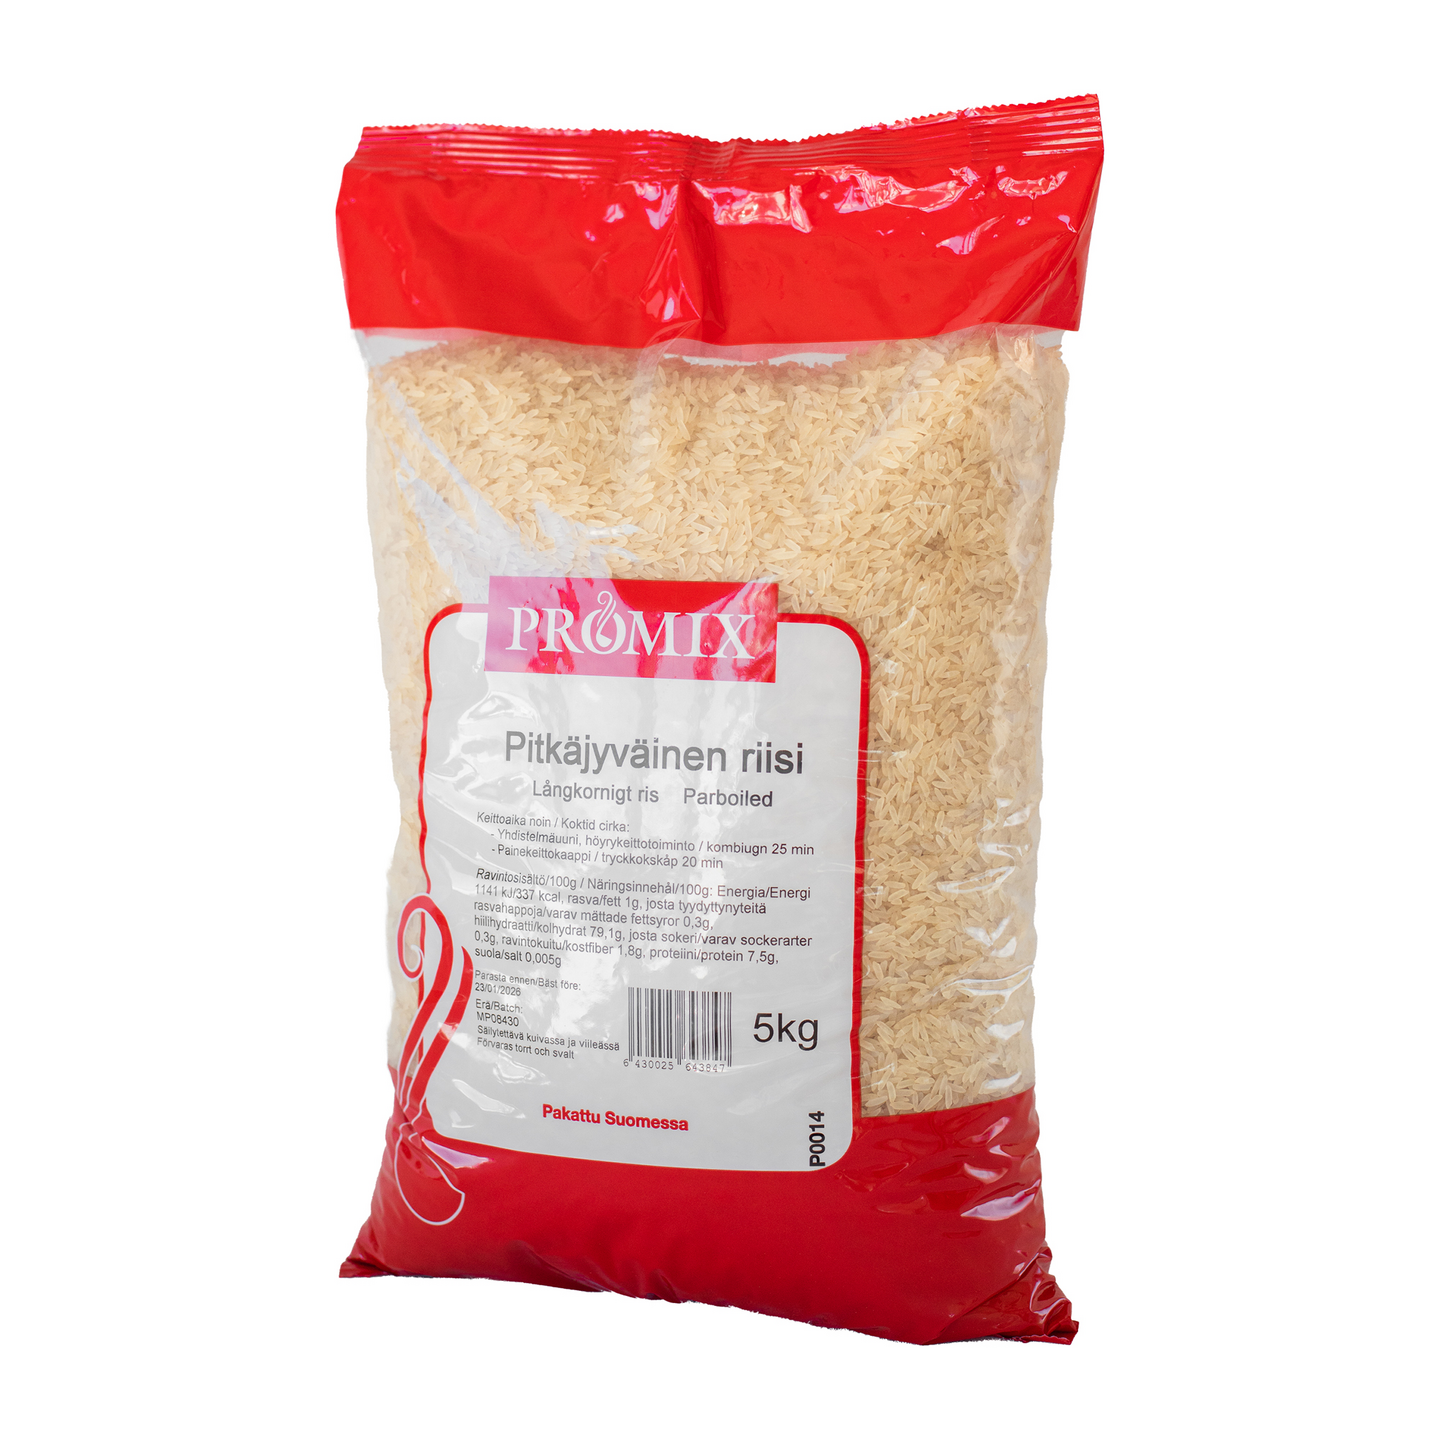 Promix Pitkäjyväinen riisi 5 kg